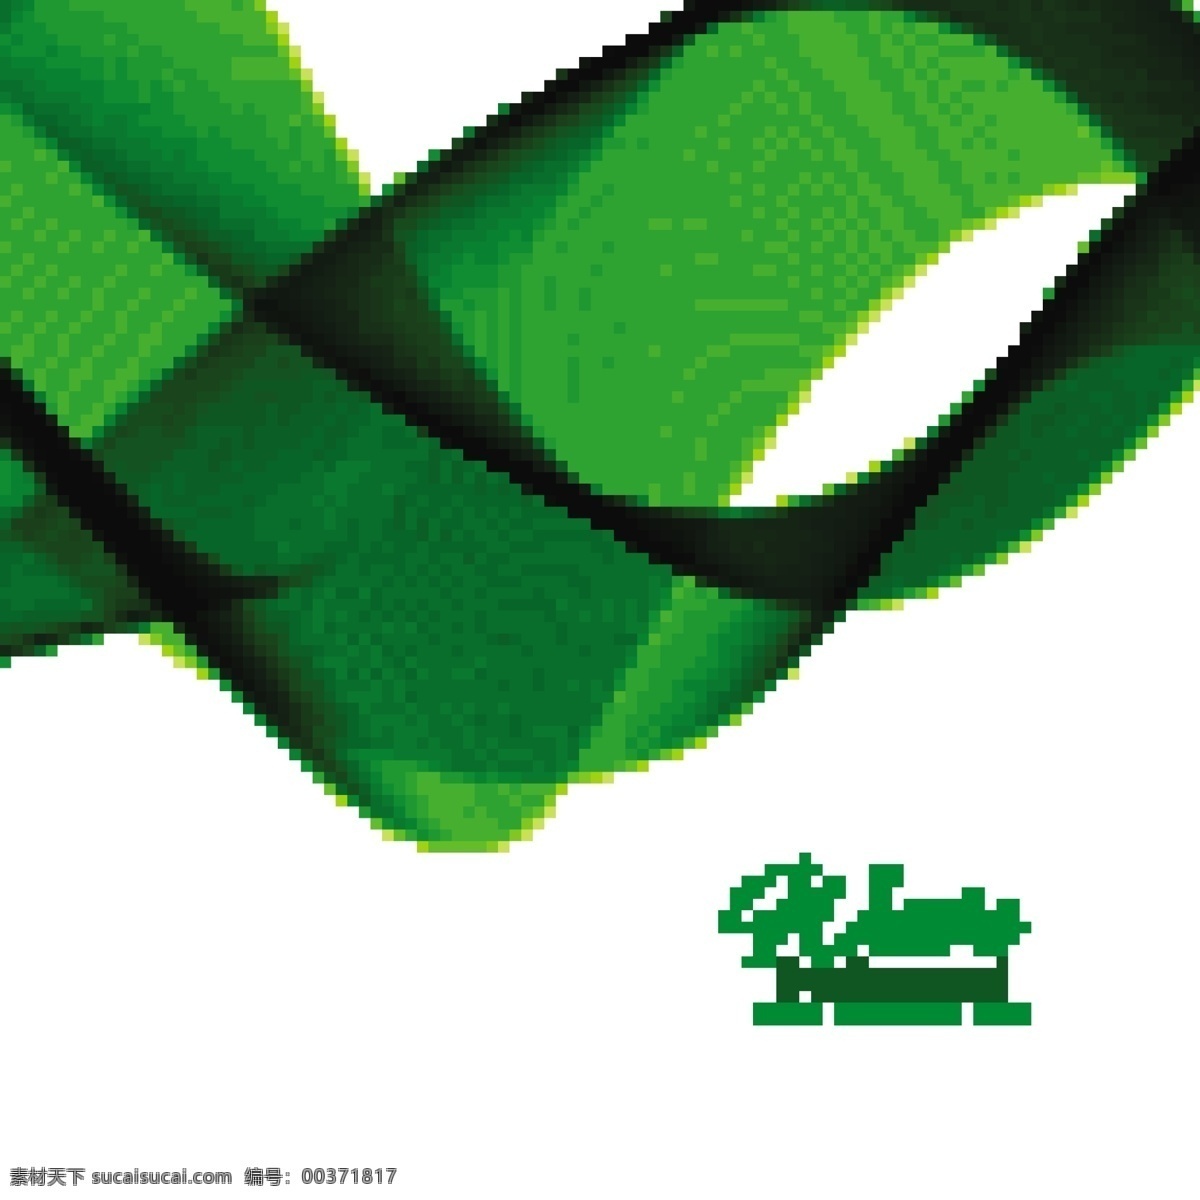 绿色波浪背景 背景 商业 抽象 卡片 模板 线条 绿色 波浪 形状 墙纸 颜色 烟雾 呈现 优雅 现代 曲线 抽象的形状 波浪形